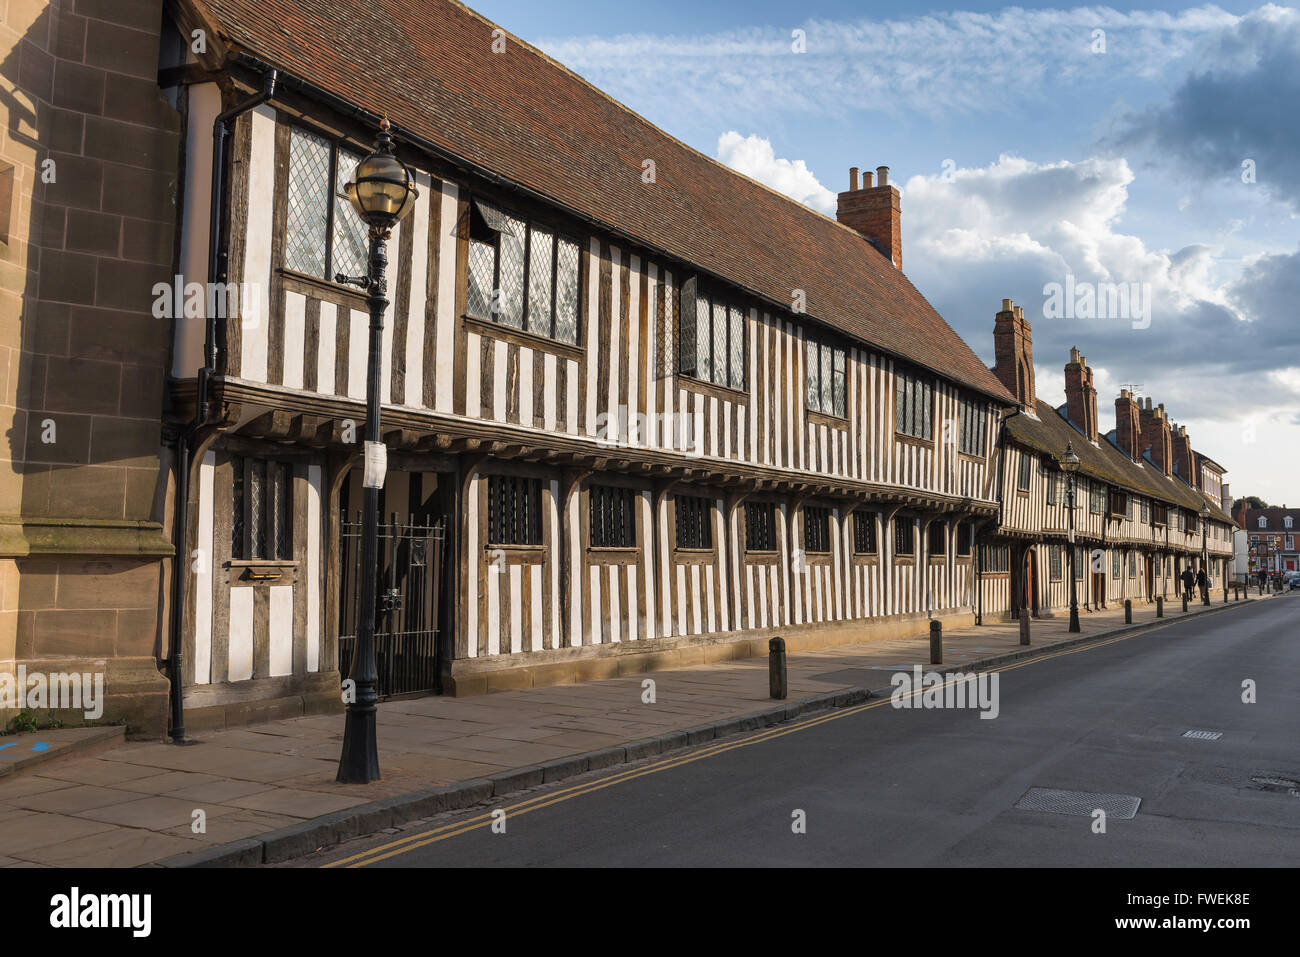 Bâtiment médiéval Angleterre, vue sur les maisons typiques à colombages datant de la fin du Moyen-âge dans Church Street, Stratford Upon Avon, Angleterre, Royaume-Uni Banque D'Images